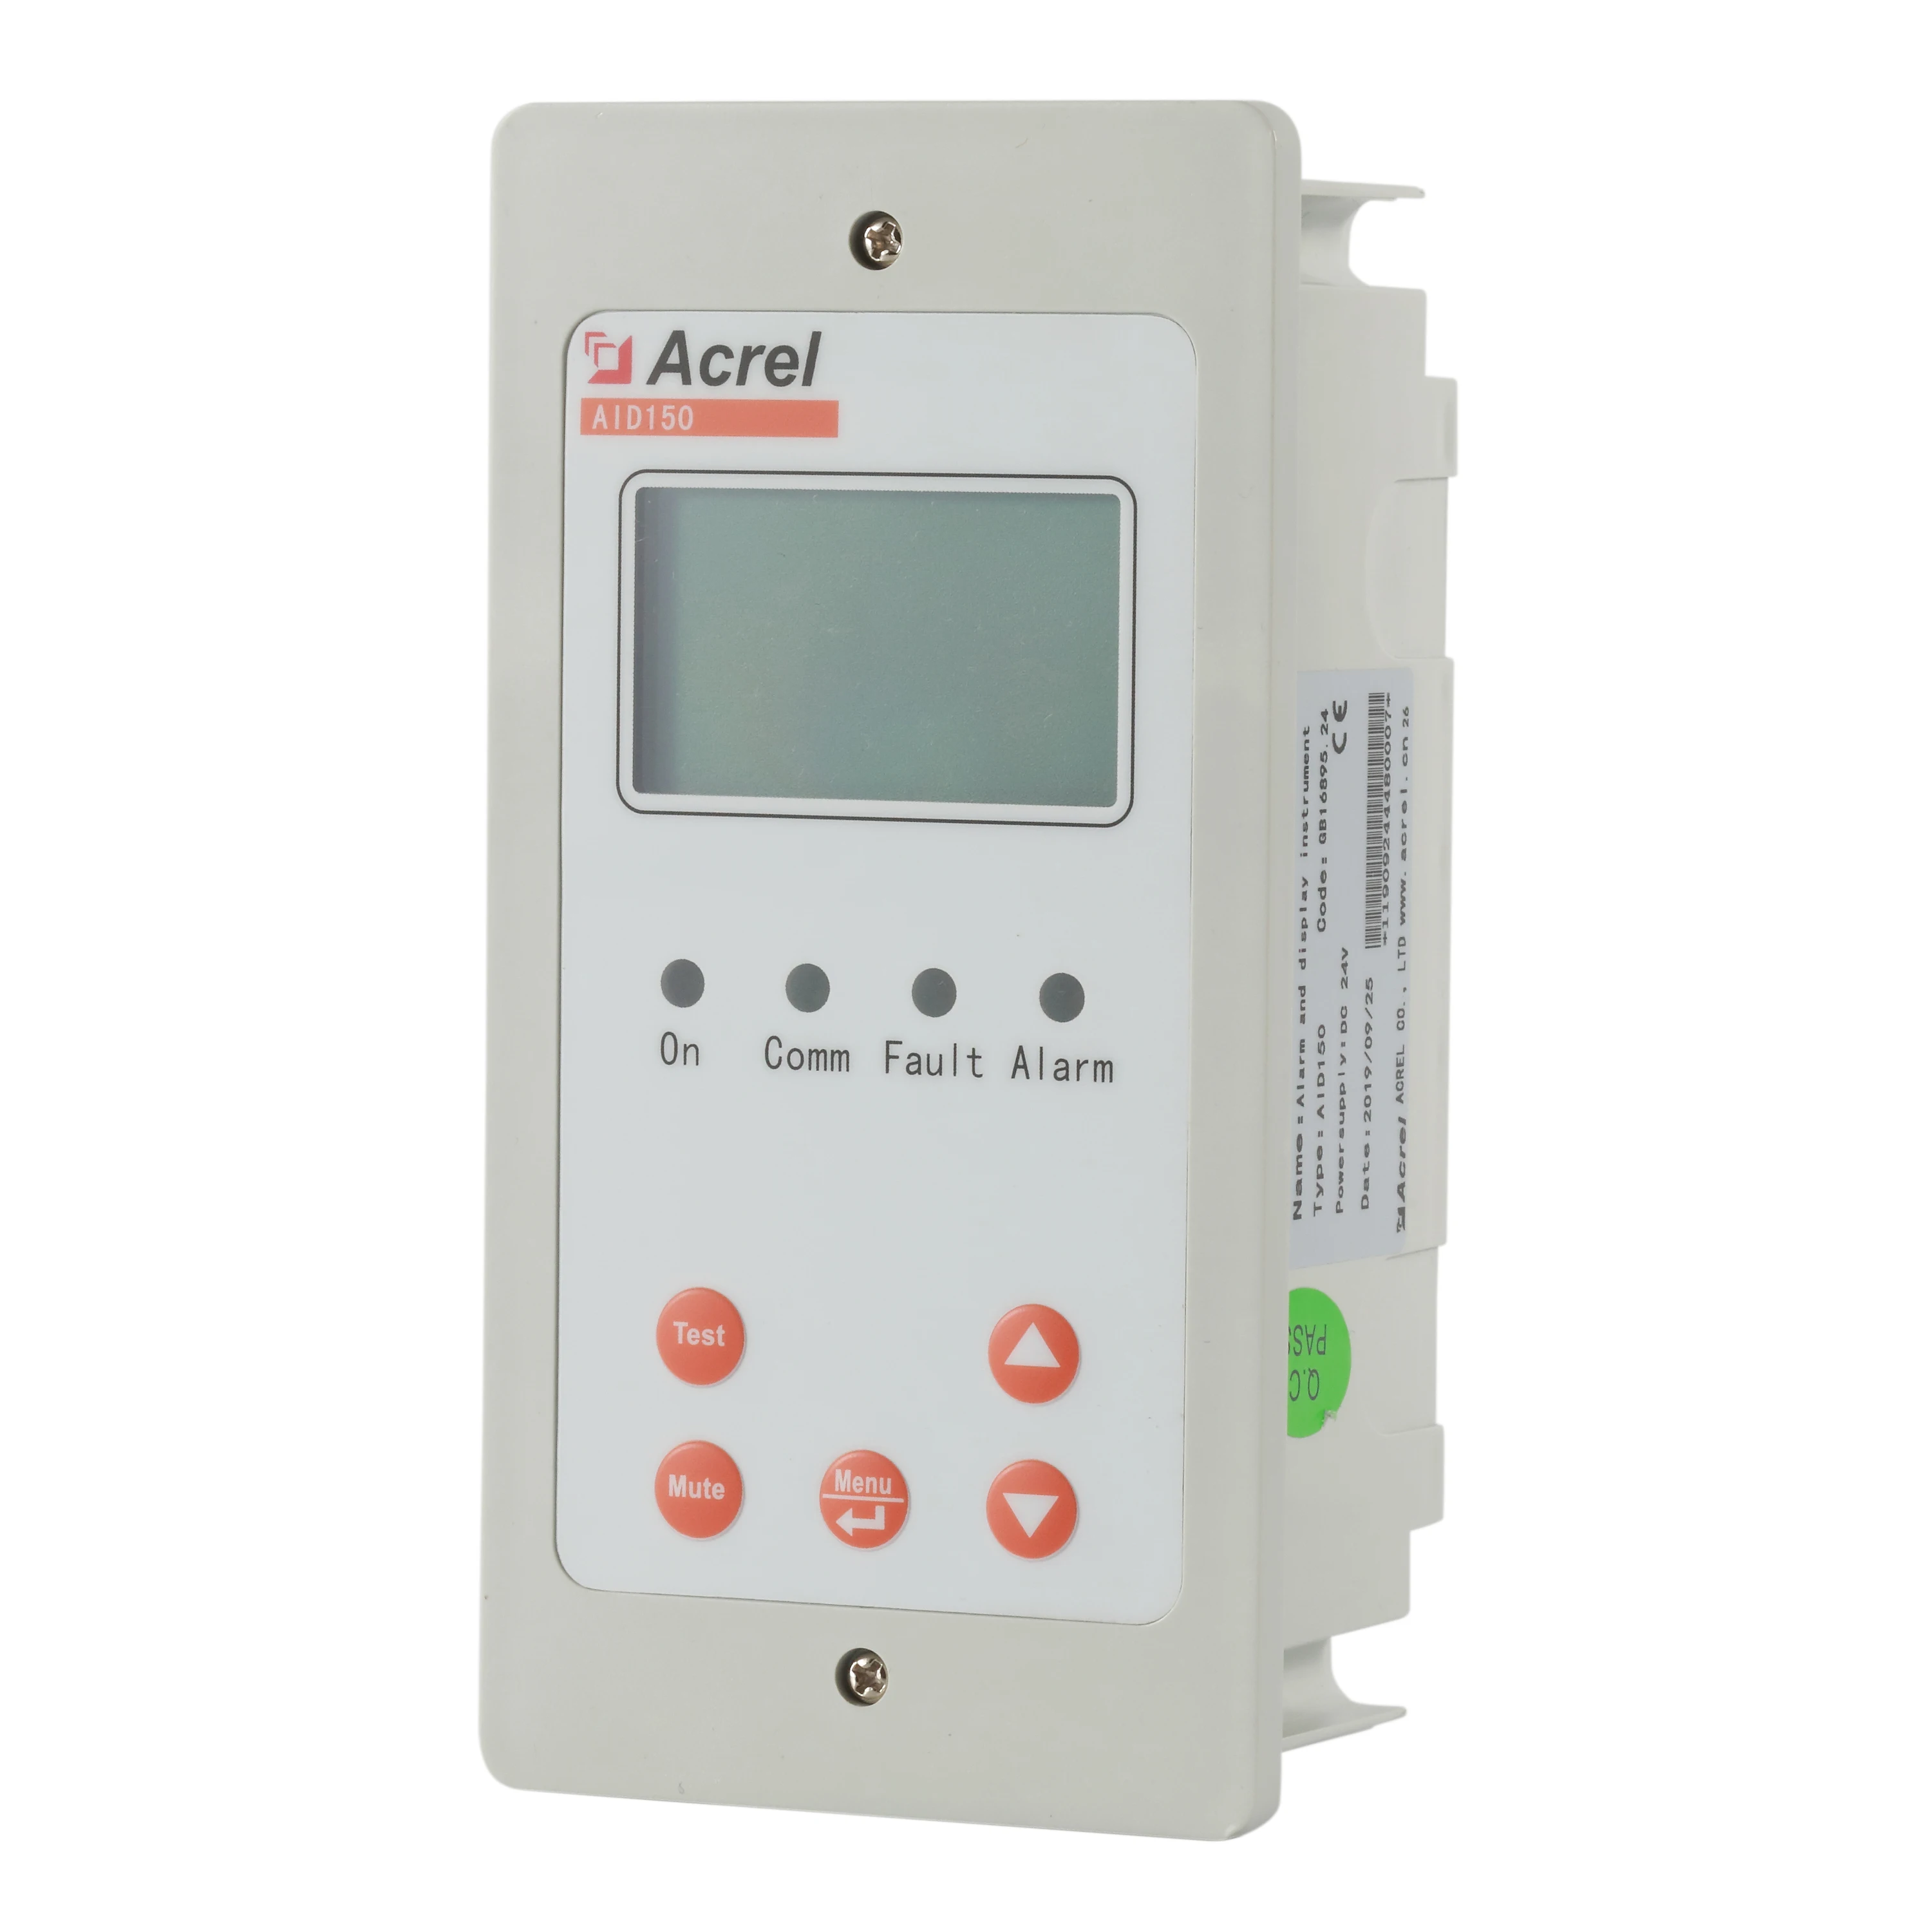 Acrel AID150 Medicinos veiklos terminalo signalizacijos izoliacija rodyti prietaiso ligoninės